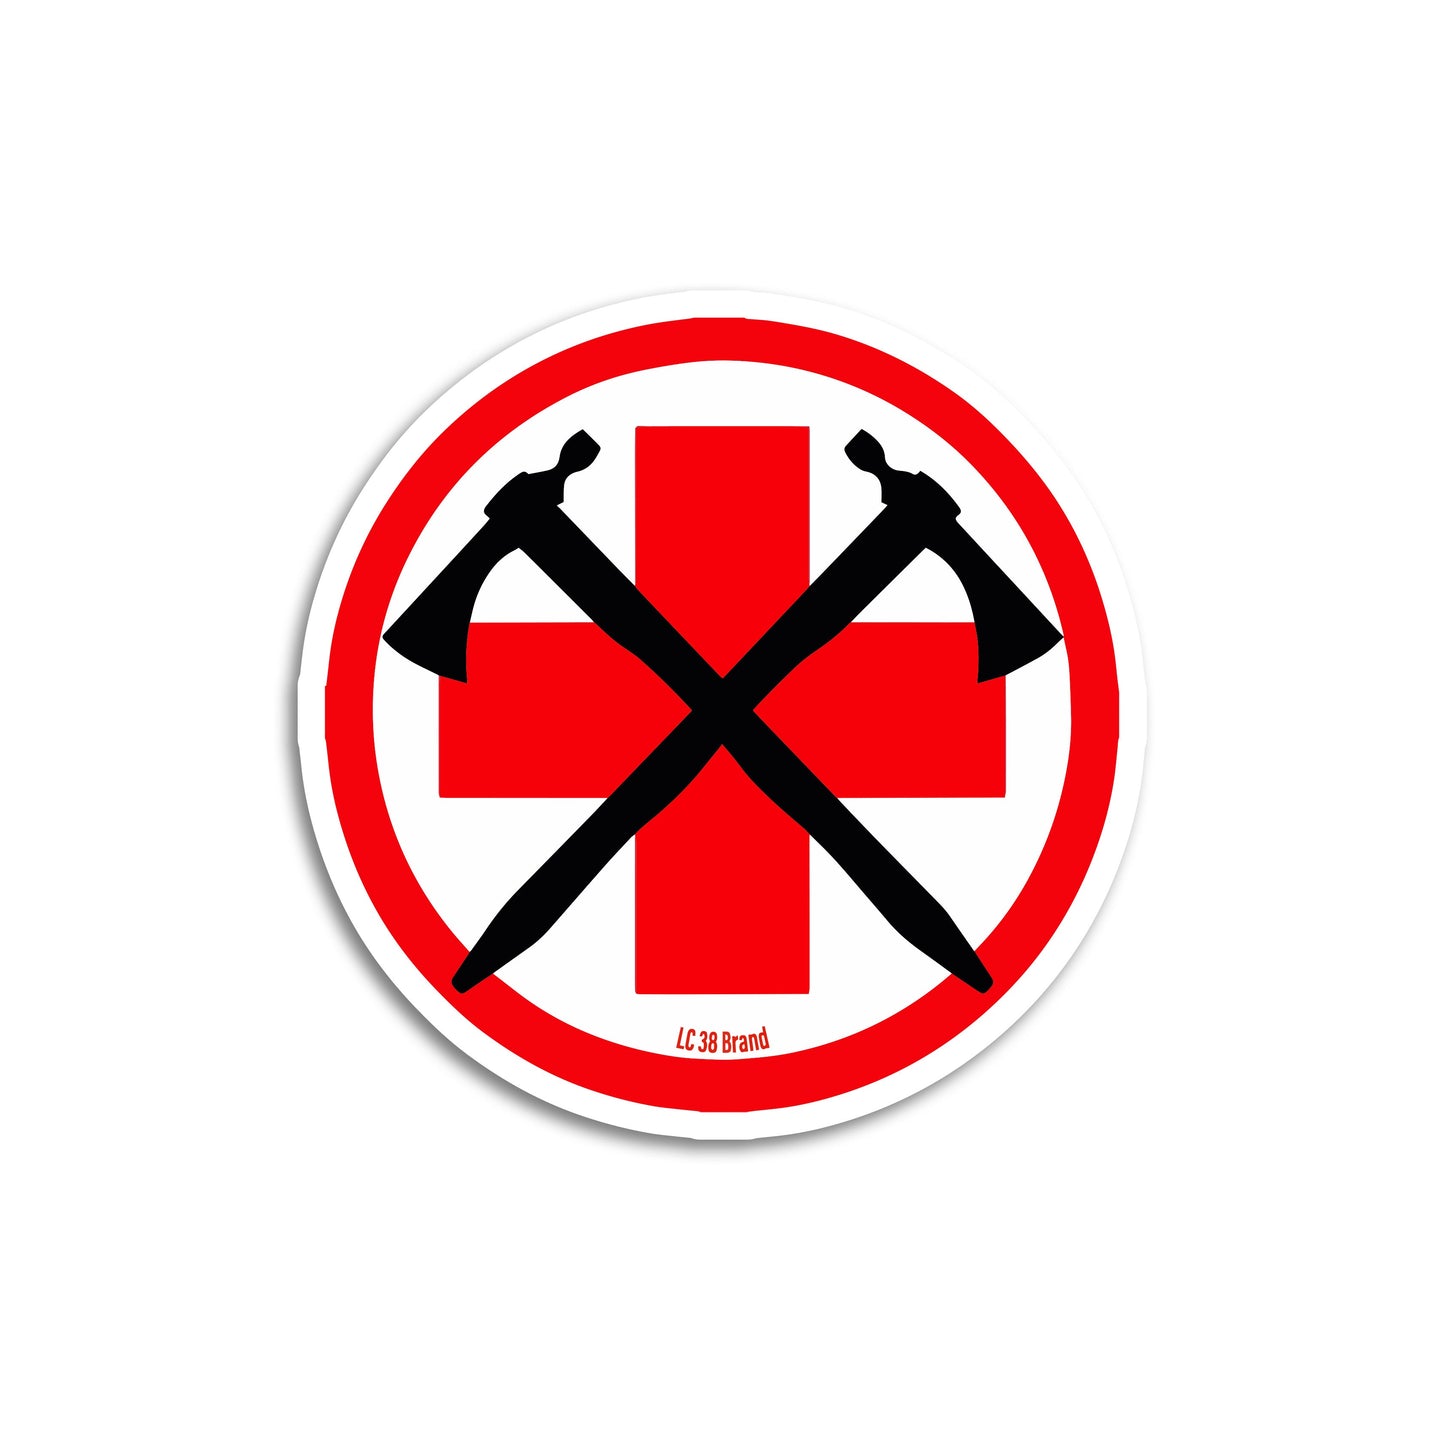 Red Cross Medic sticker